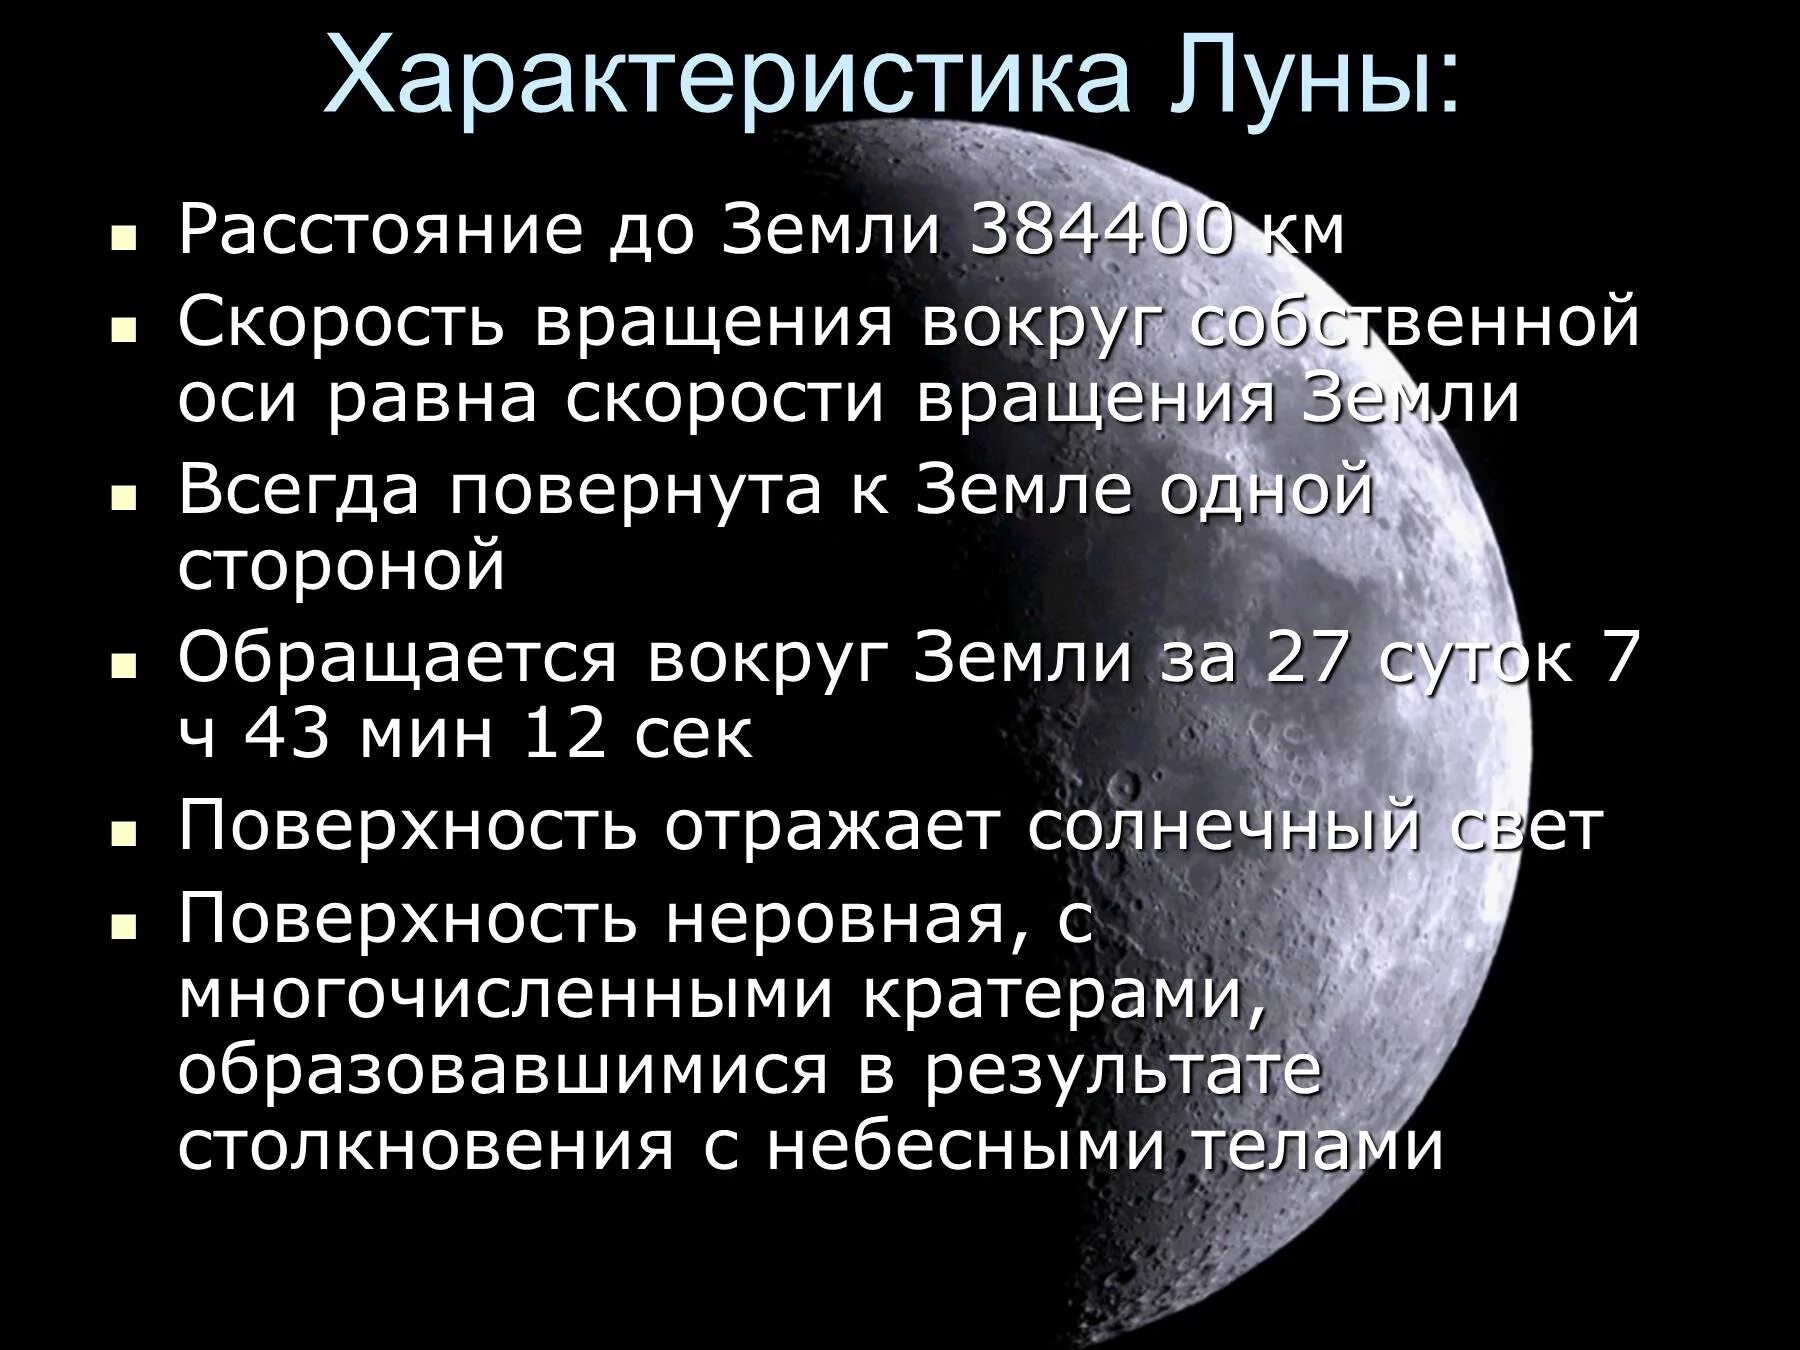 Средняя плотность луны. Характеристика Луны. Луна краткая характеристика. Физические характеристики Луны. Характеристика Луны кратко.